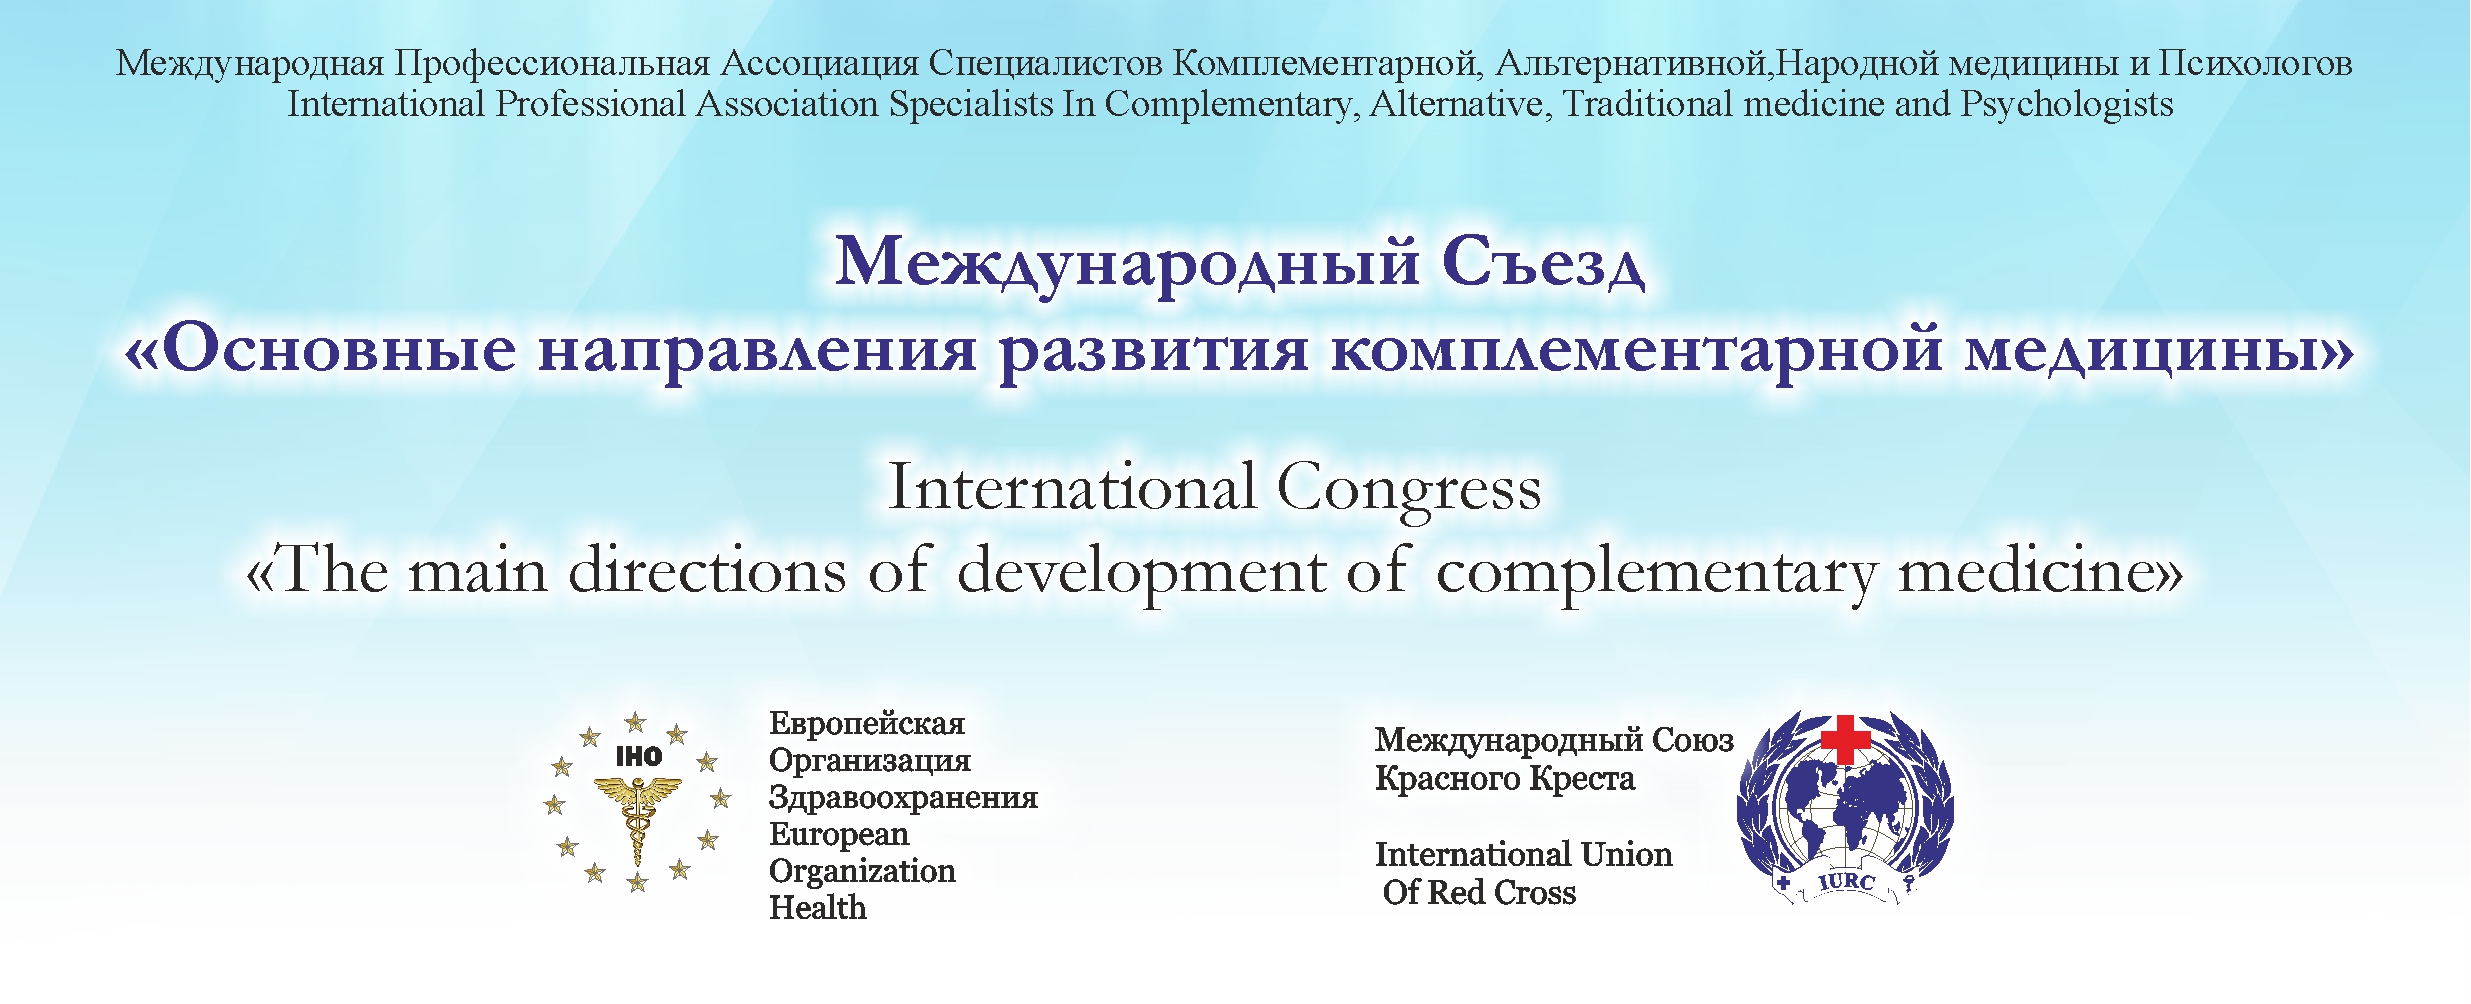 1 - Состоялась Международная Конференция "Основные направления развития комплементарной медицины"